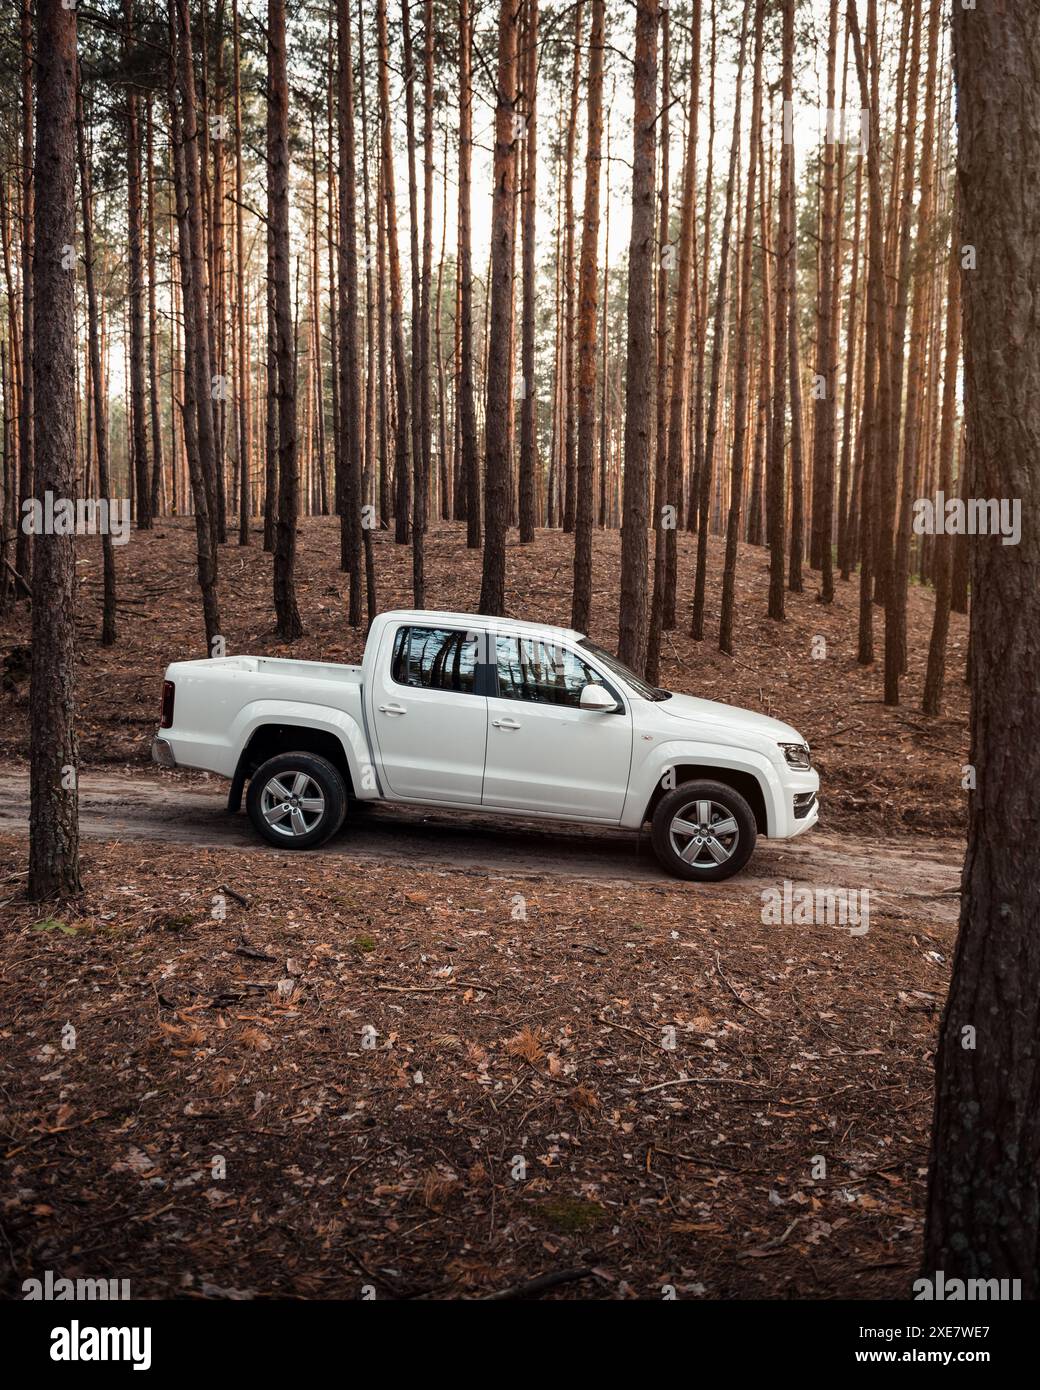 Volkswagen Amarok blanc dans une forêt. Vue de profil latérale du pick-up VW à cabine double dans la forêt de pins au coucher du soleil. Banque D'Images